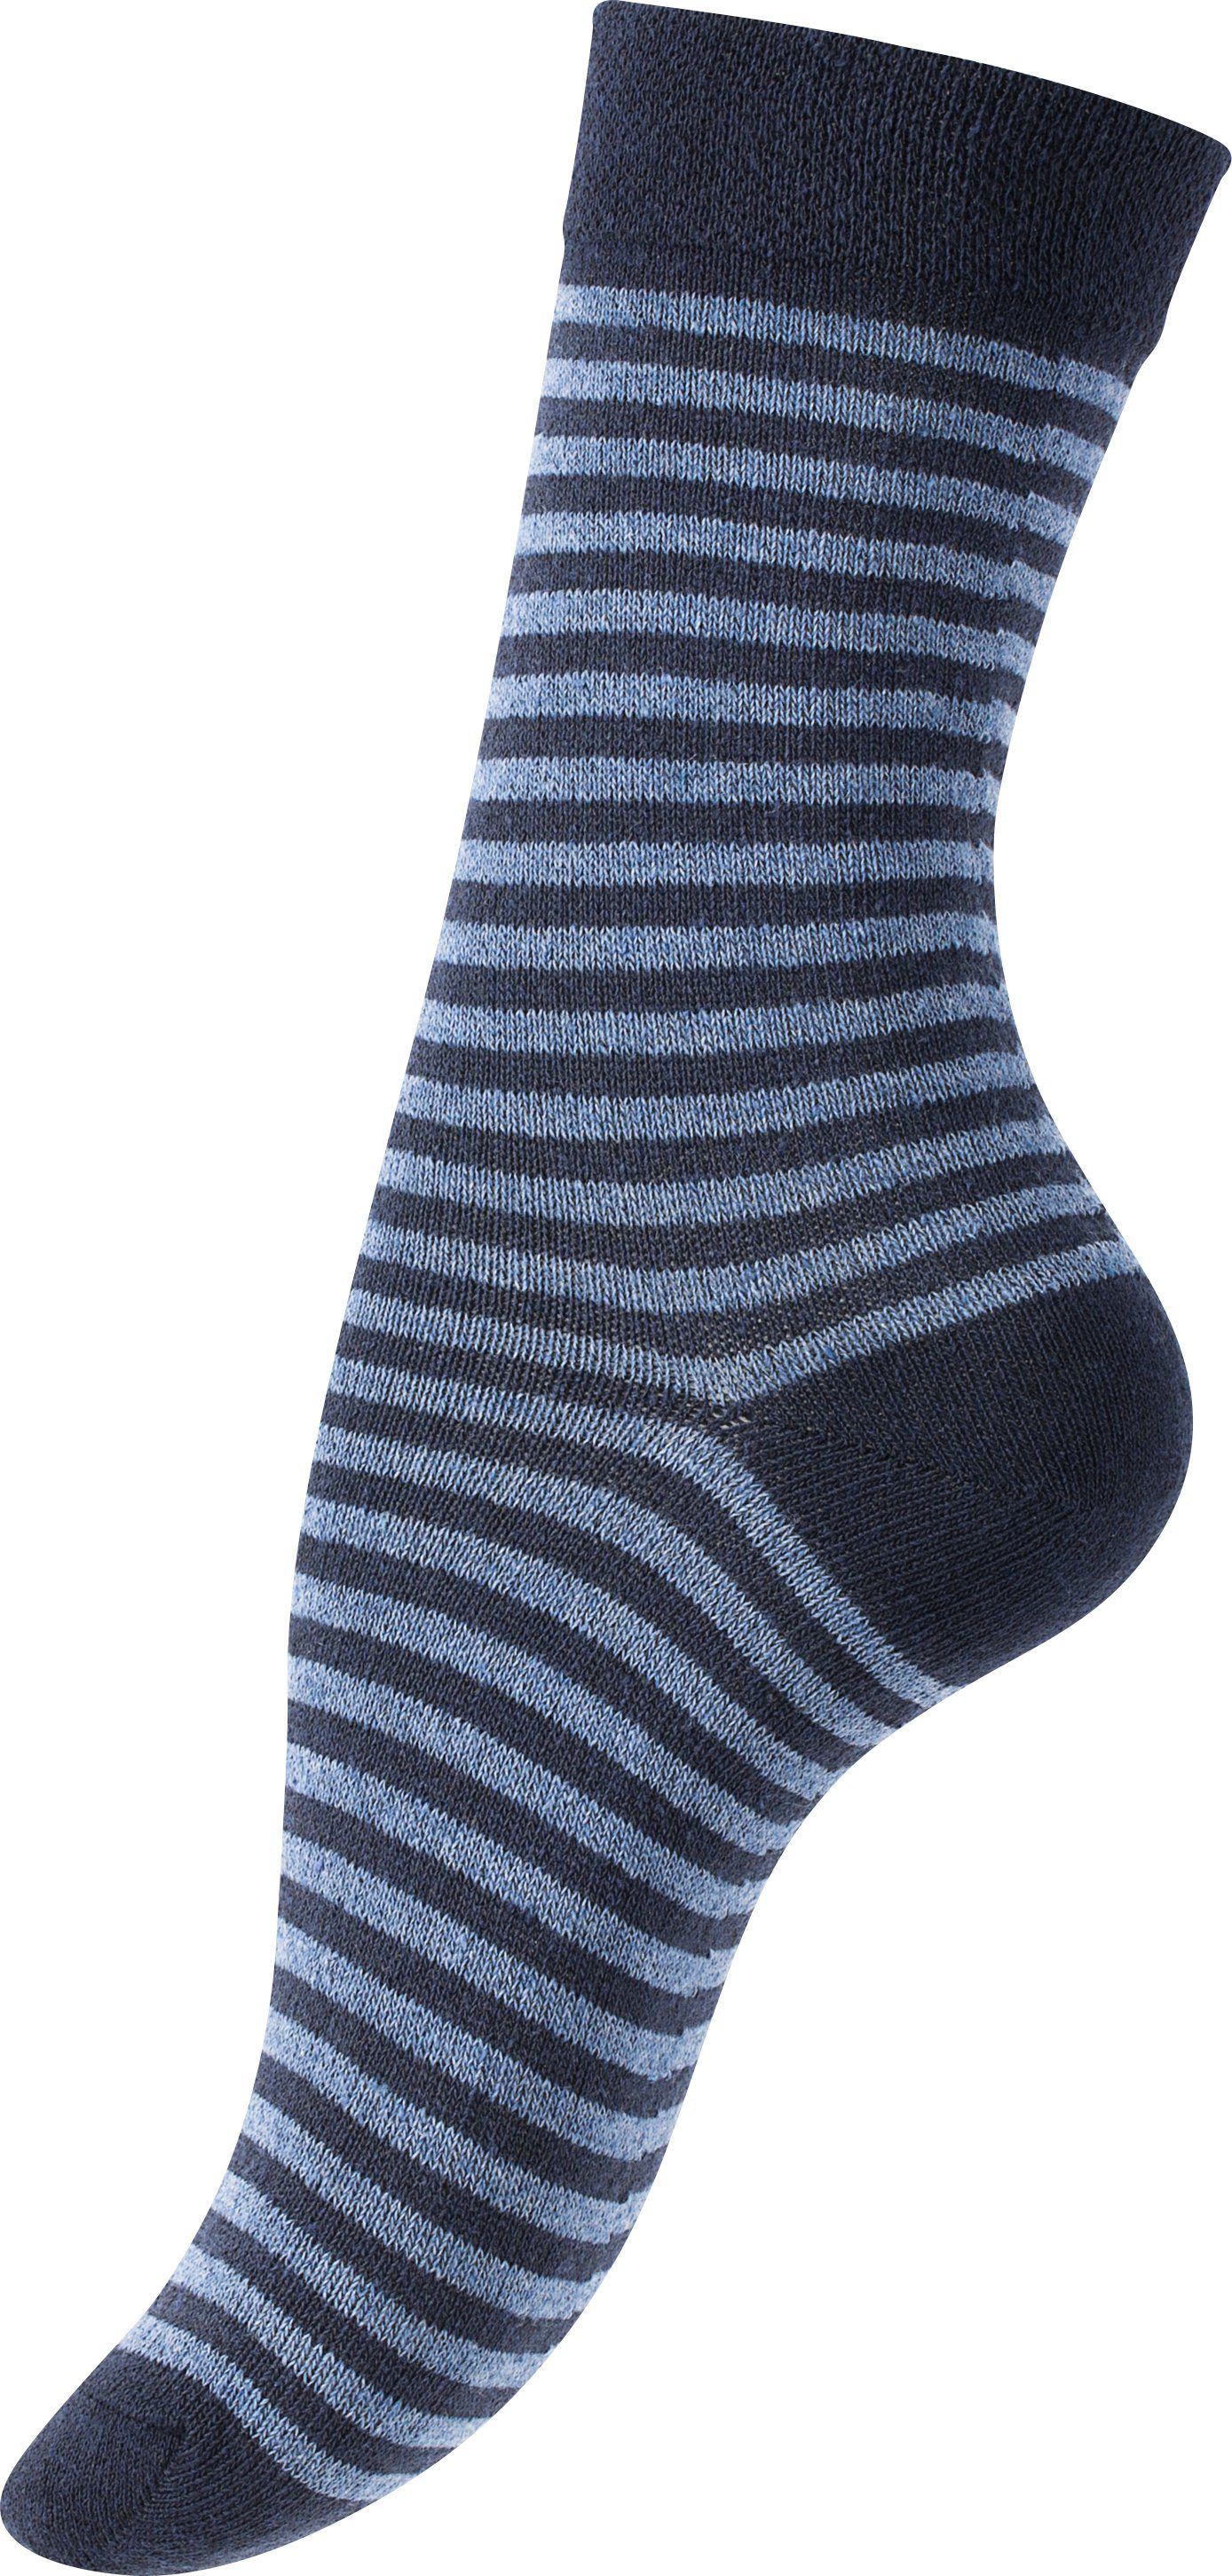 Vincent Creation® in Jeans Socken (10-Paar) angenehmer blau Baumwollqualität